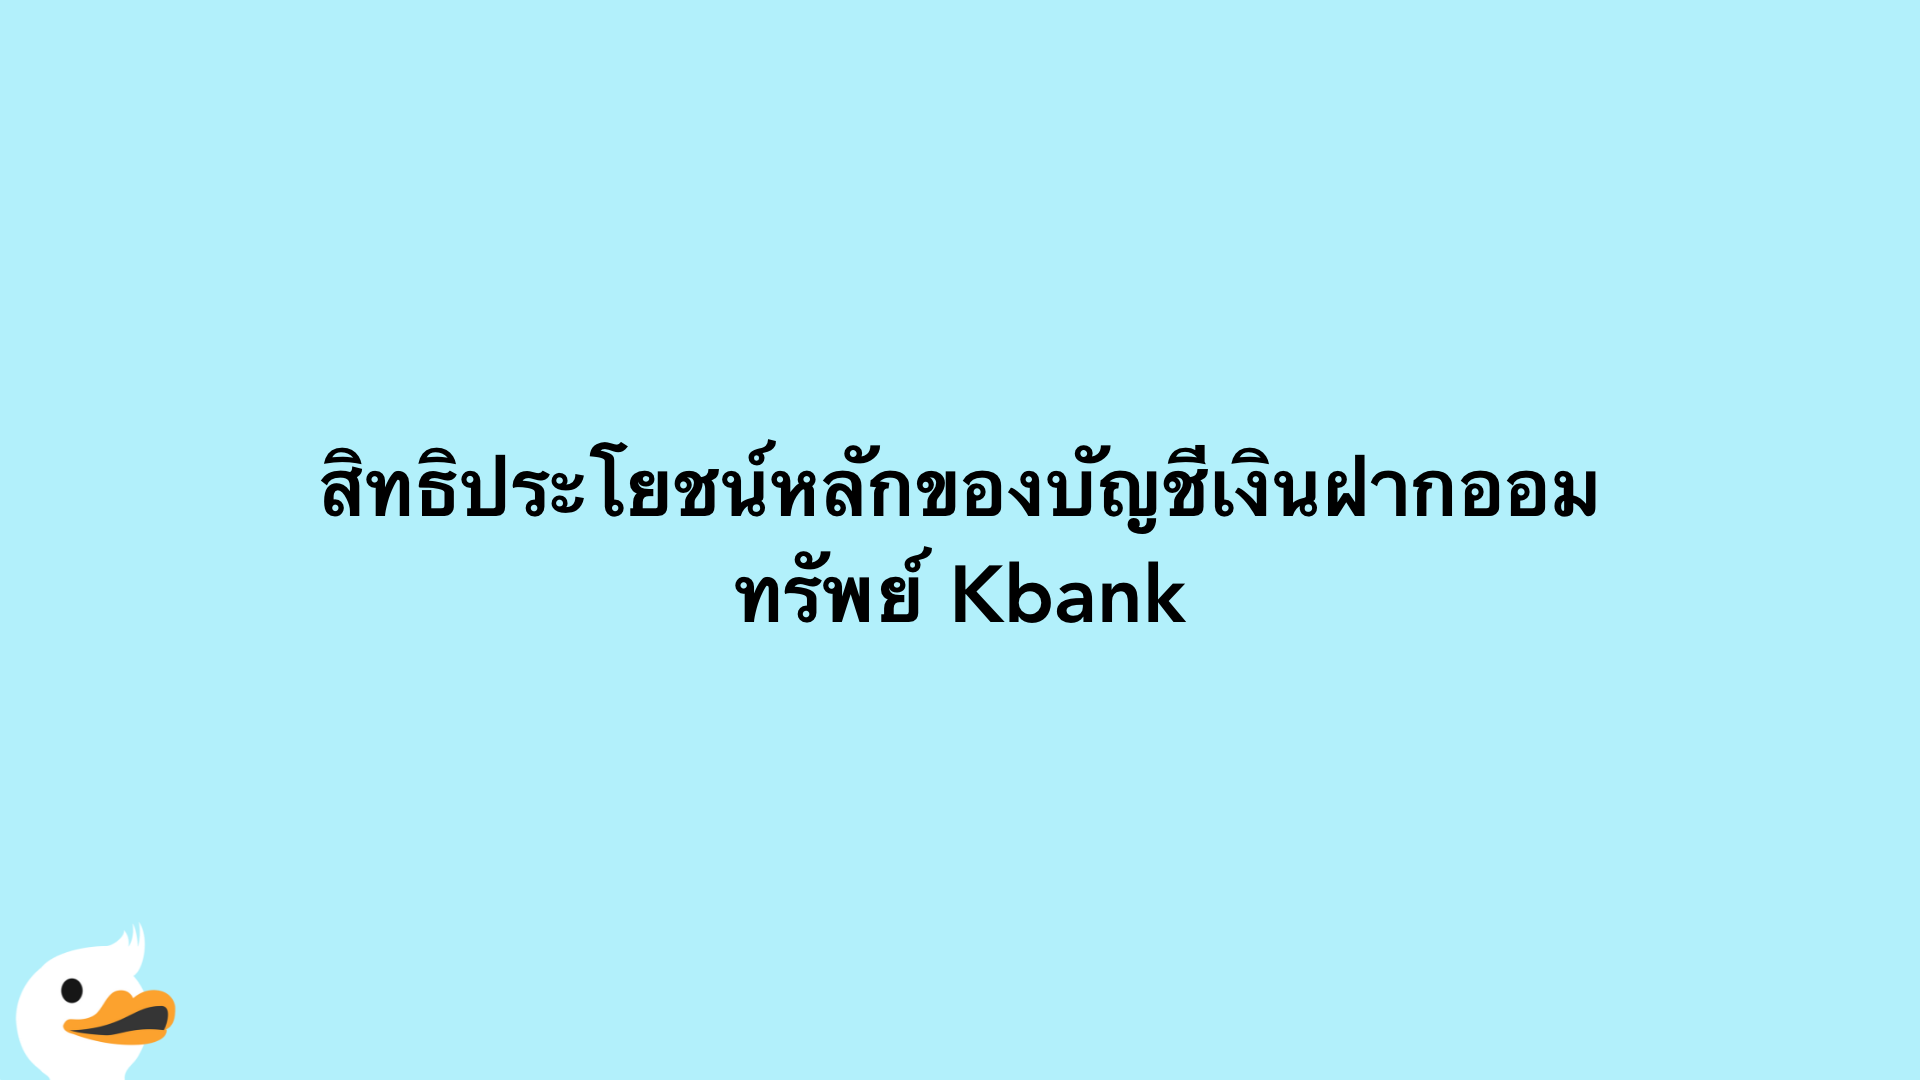 สิทธิประโยชน์หลักของบัญชีเงินฝากออมทรัพย์ Kbank